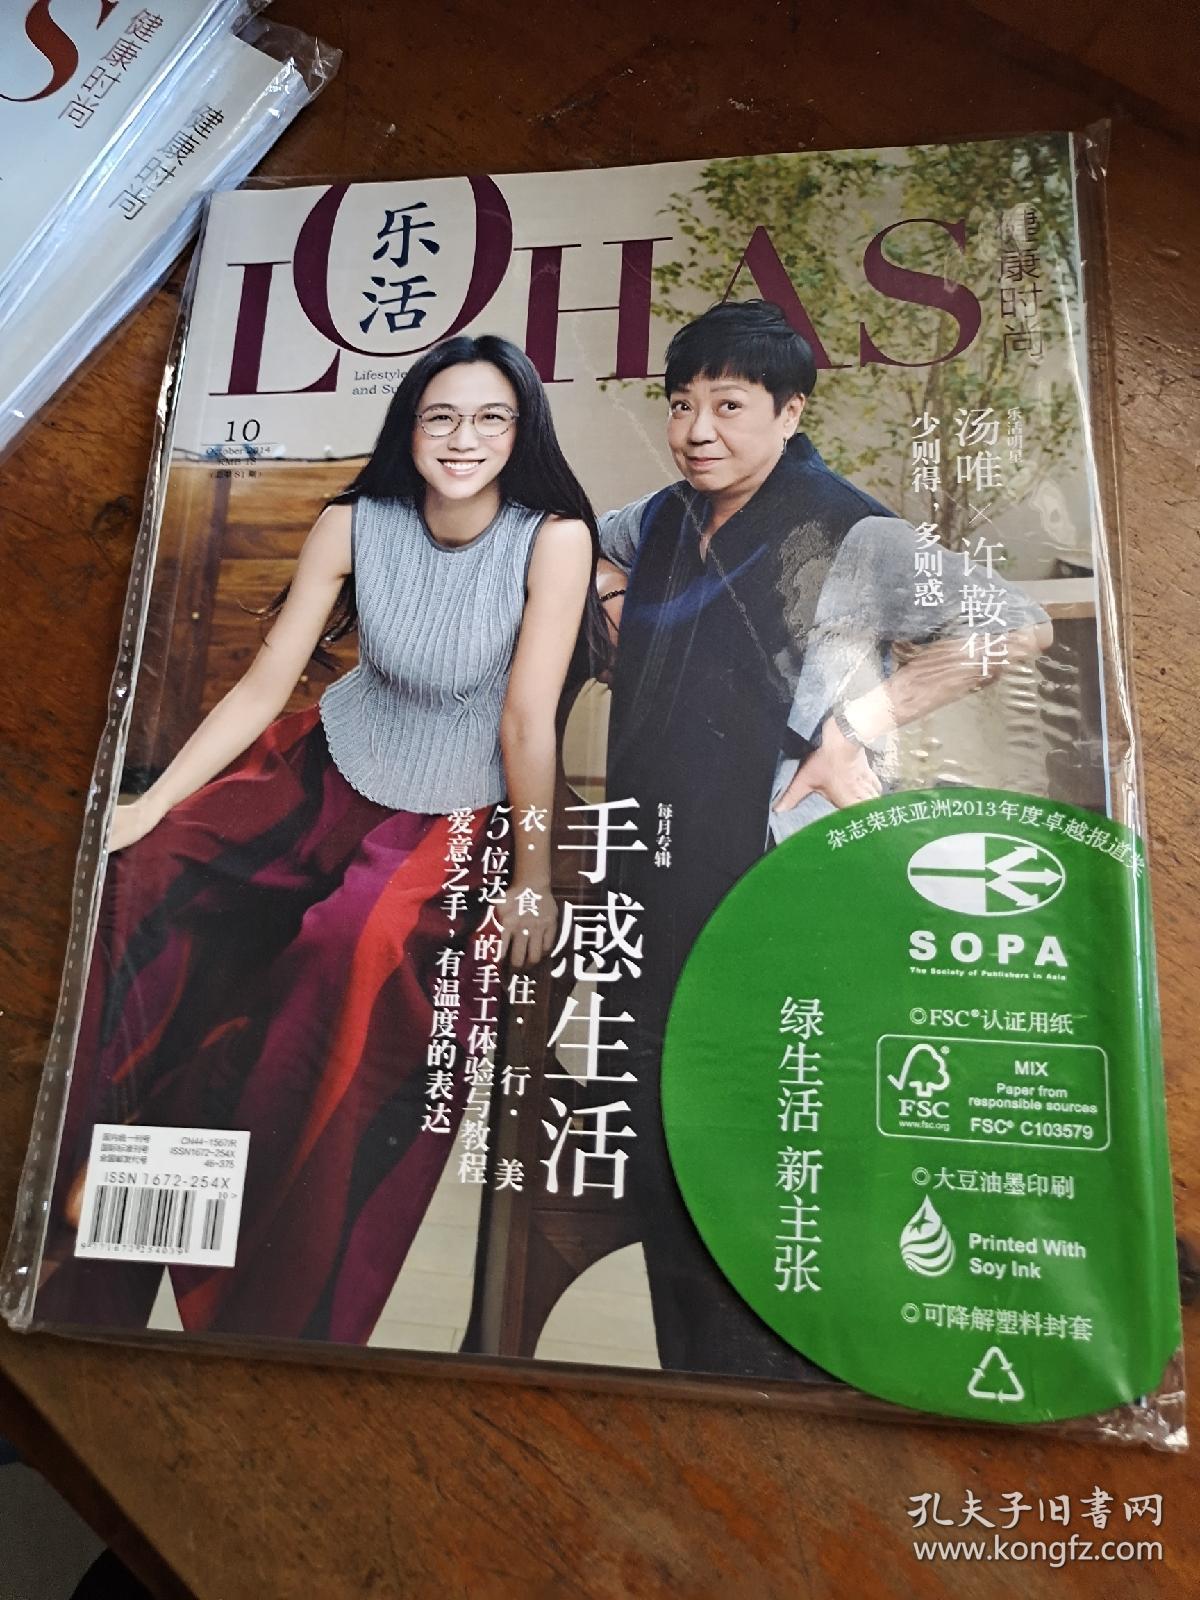 LOHAS 乐活·健康时尚 手感生活 2014年10月 总第81期/杂志